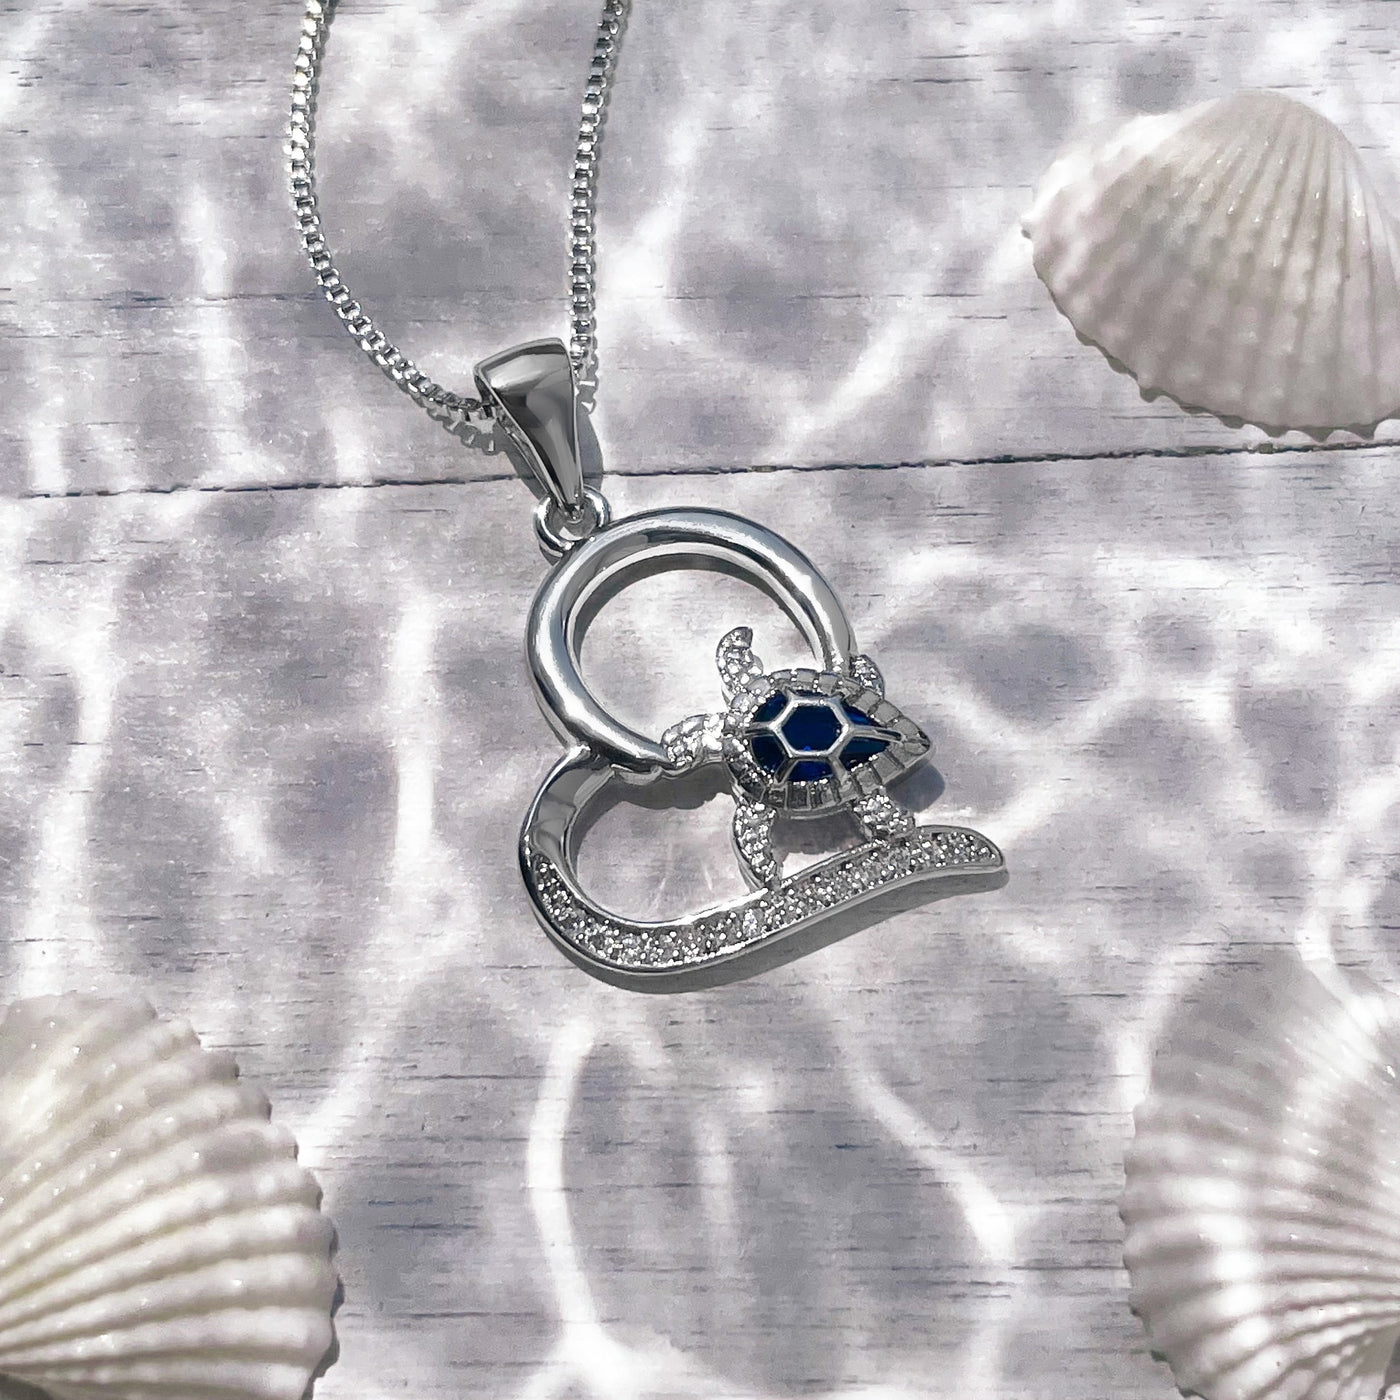 Cute Little Sea Turtle Love Necklace